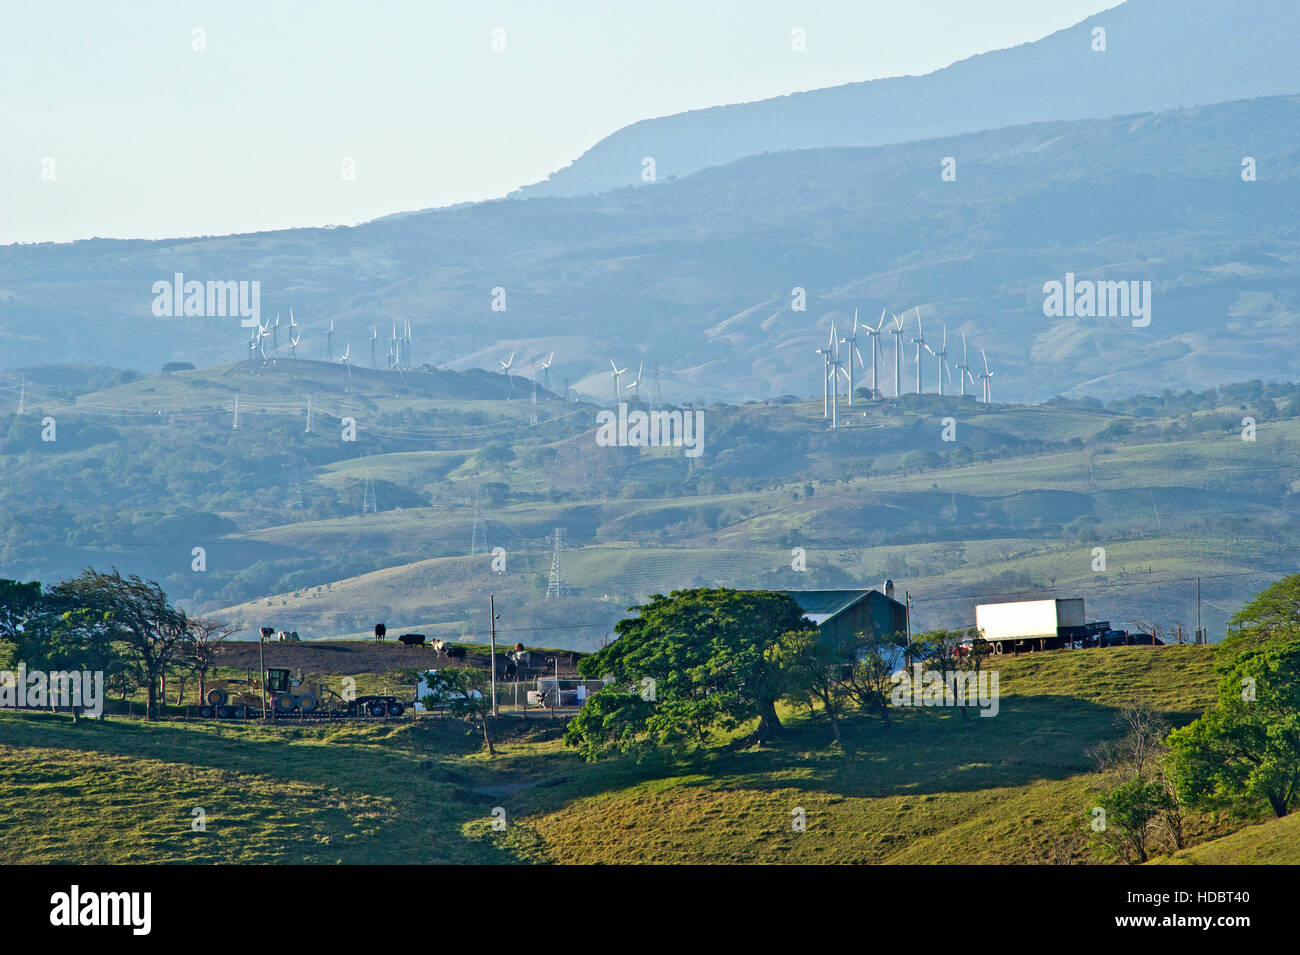 Windfarms on the slopes of Cordillera de Tilarán mountains in Costa Rica Stock Photo